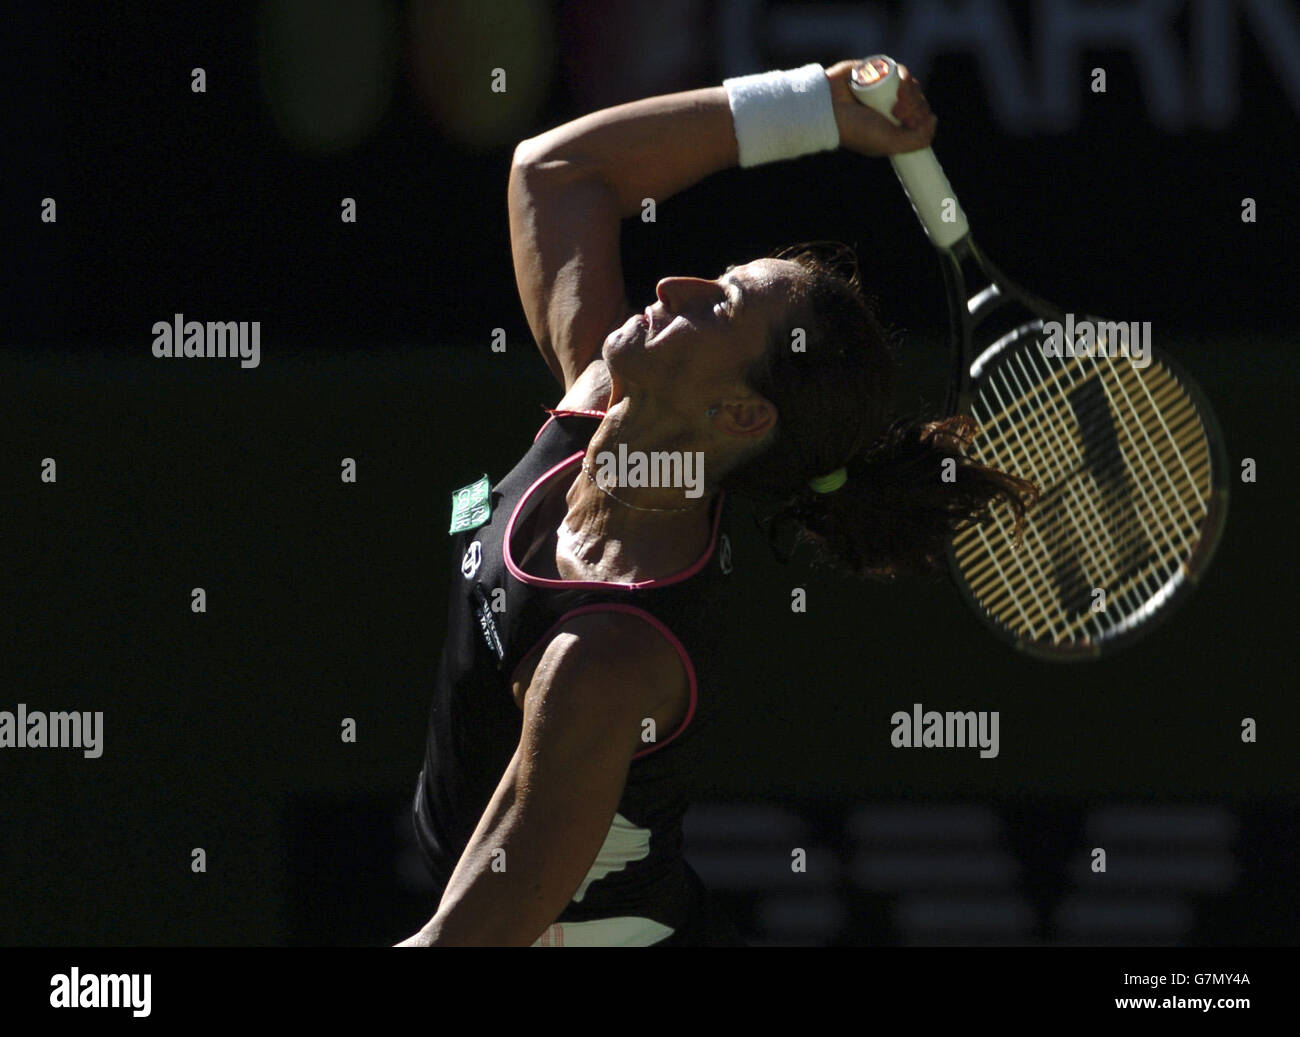 Tennis - Australian Open 2005 - Femminile's Forth Round. Silvia farina Elia in azione durante la sua partita contro Maria Sharapova Foto Stock